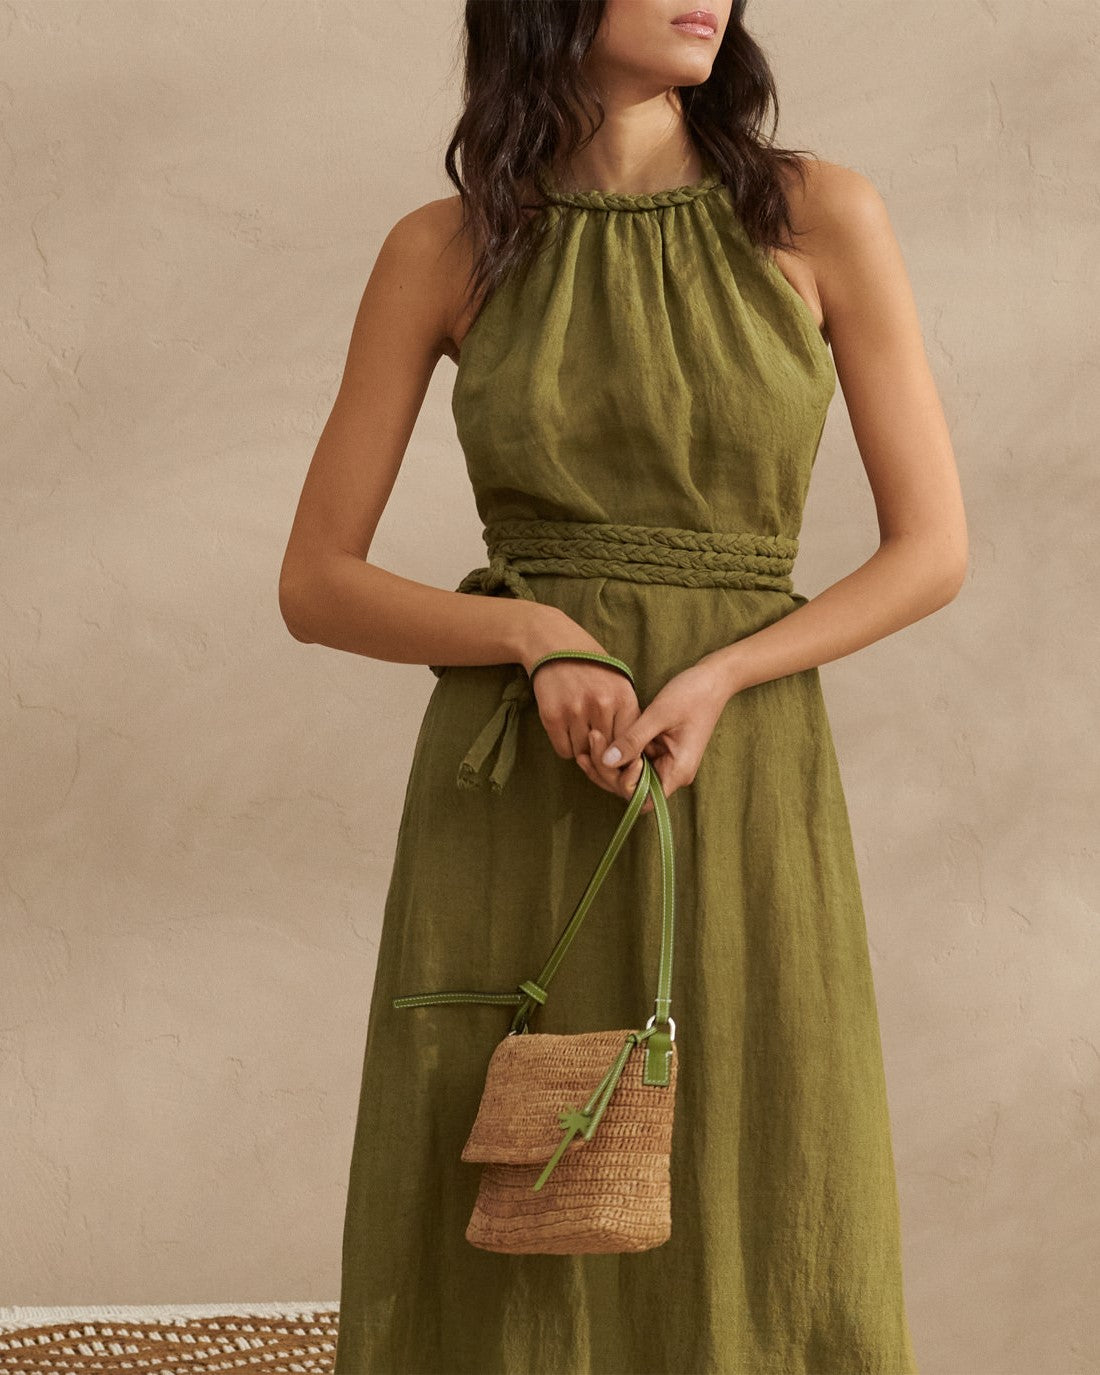 Raffia Summer Night Bag Medium - Palm Leather Tag - Tan & Green